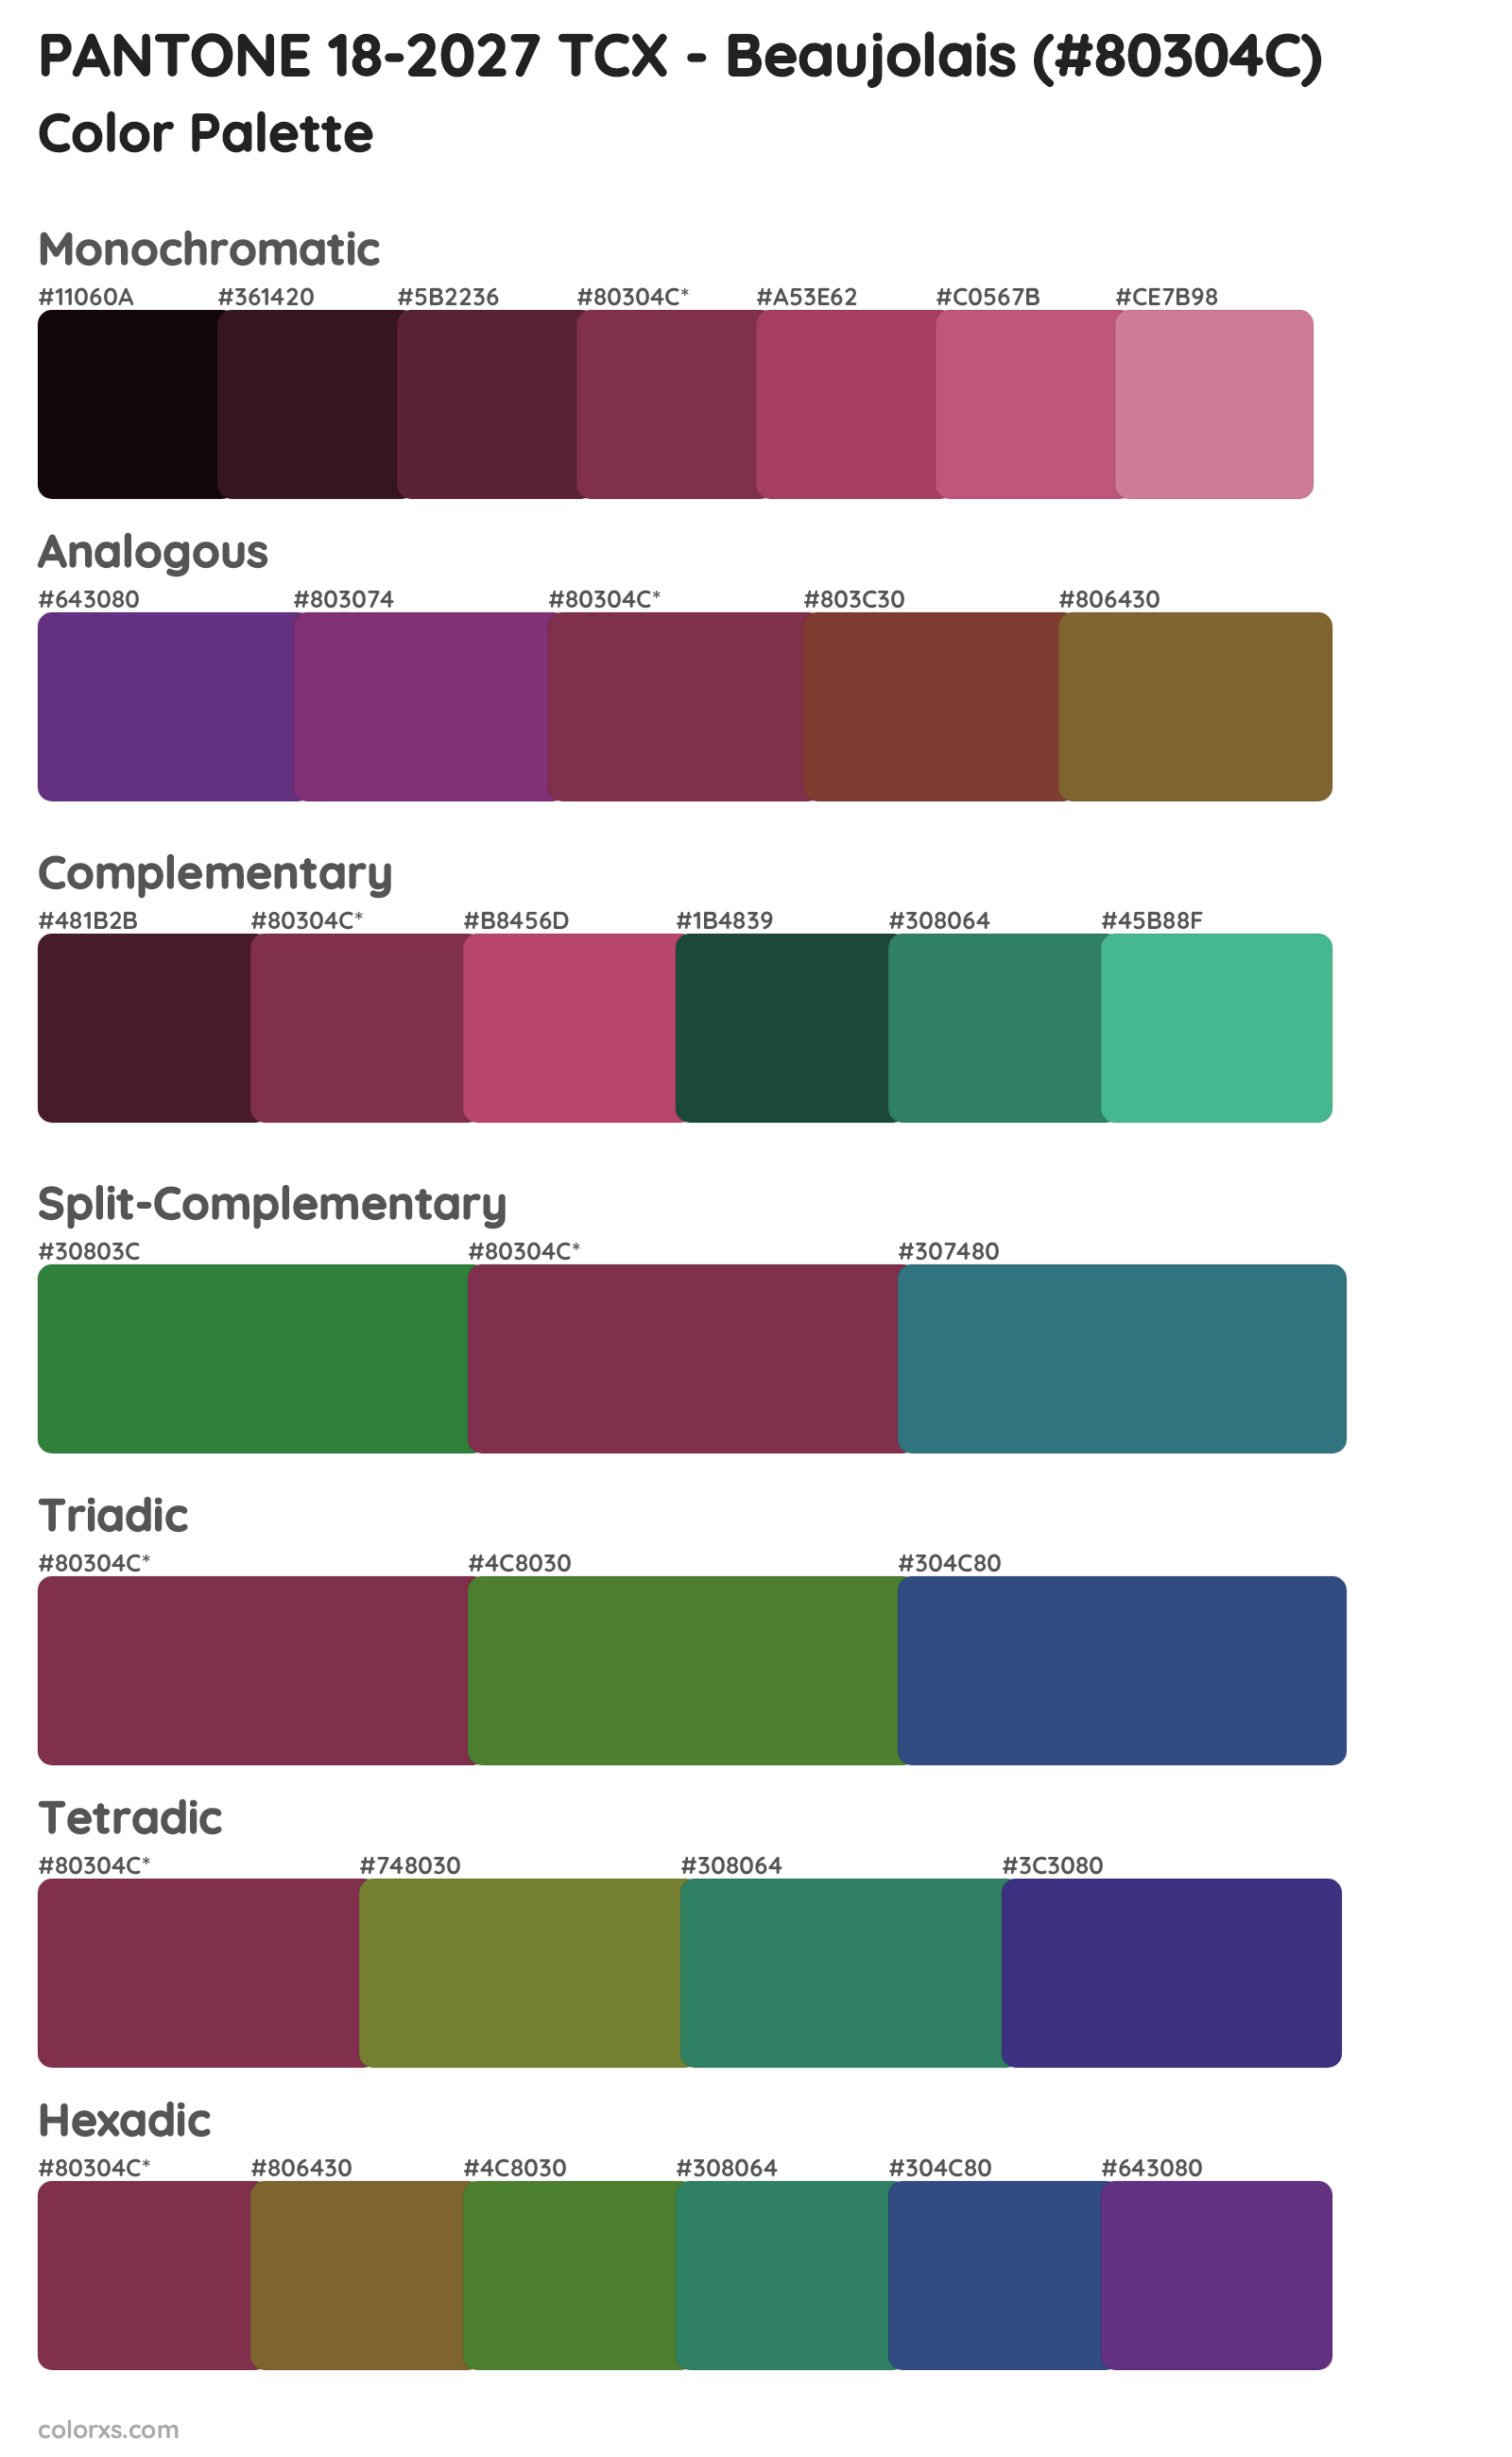 PANTONE 18-2027 TCX - Beaujolais Color Scheme Palettes